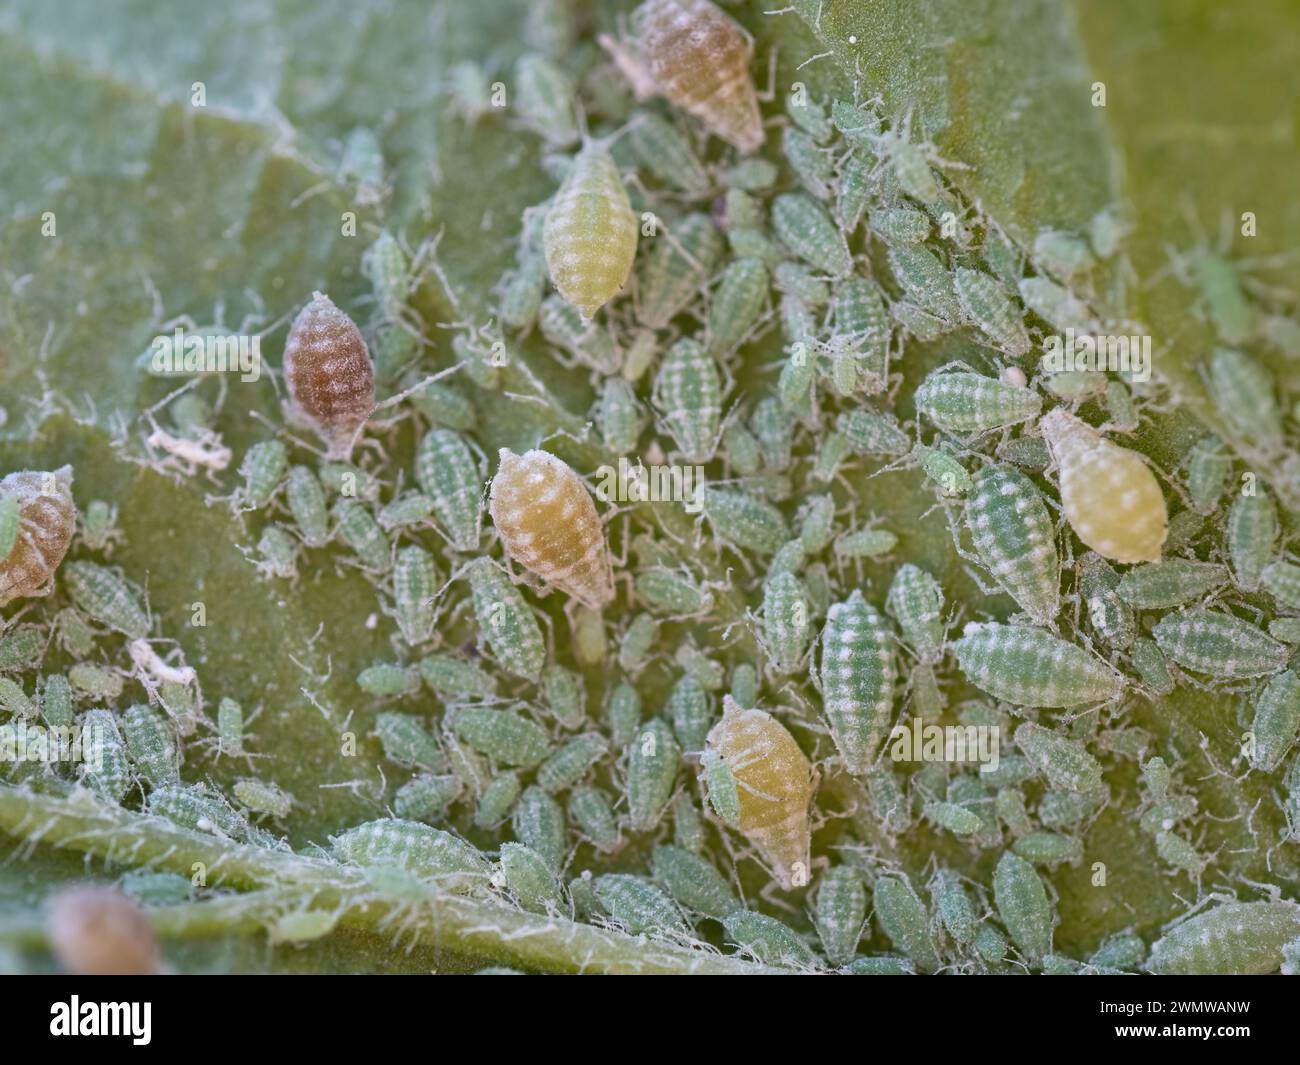 Primer plano de la colonia de áfidos - Hemiptera Aphididae - en hoja de ciruela. Foto macro de la plaga de insectos - piojos de plantas, mosca verde, mosca negra o mosca blanca - jugo de succión Foto de stock